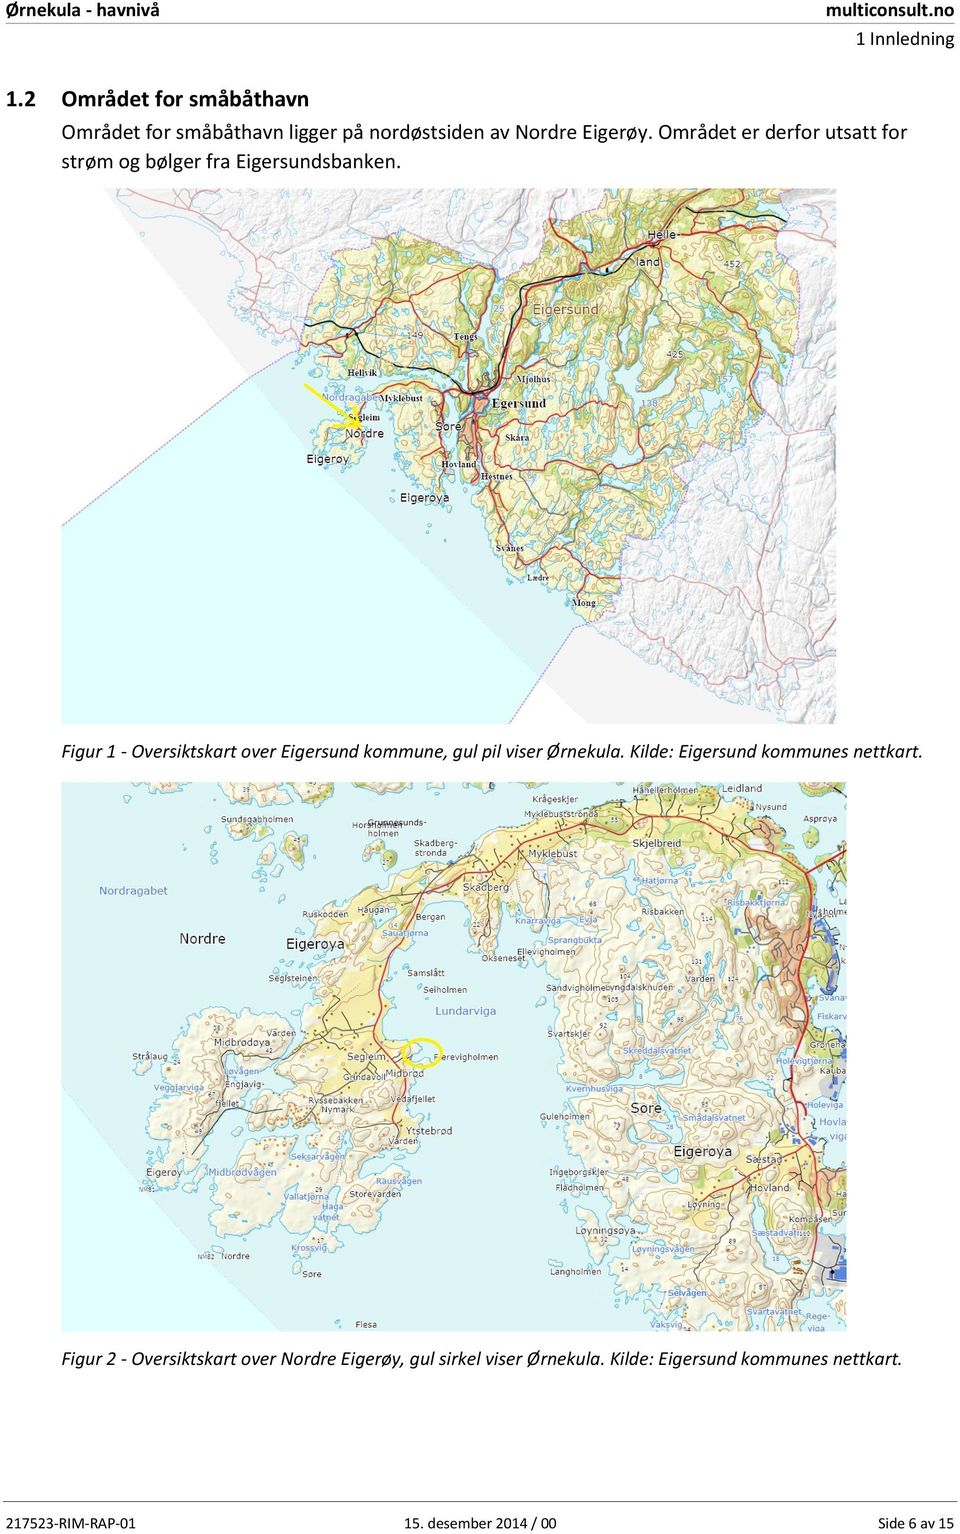 Figur 1 - Oversiktskart over Eigersund kommune, gul pil viser Ørnekula. Kilde: Eigersund kommunes nettkart.